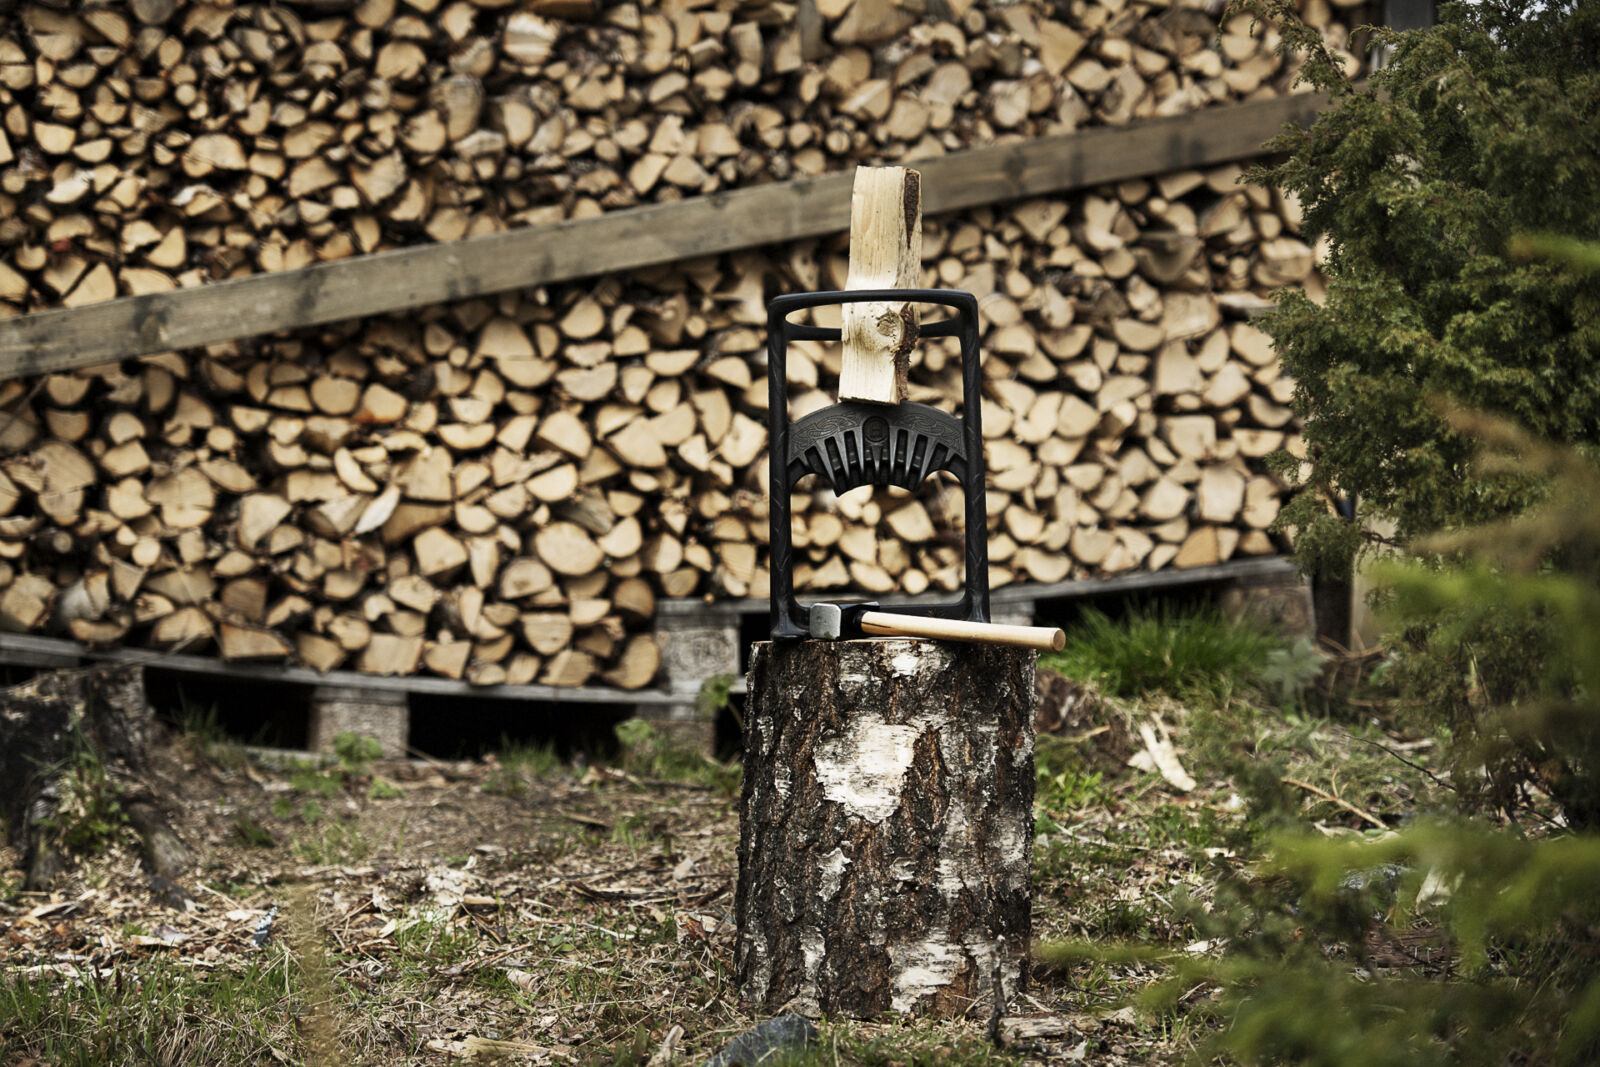 New Product: Kindling Cracker™ 'KING' firewood splitter